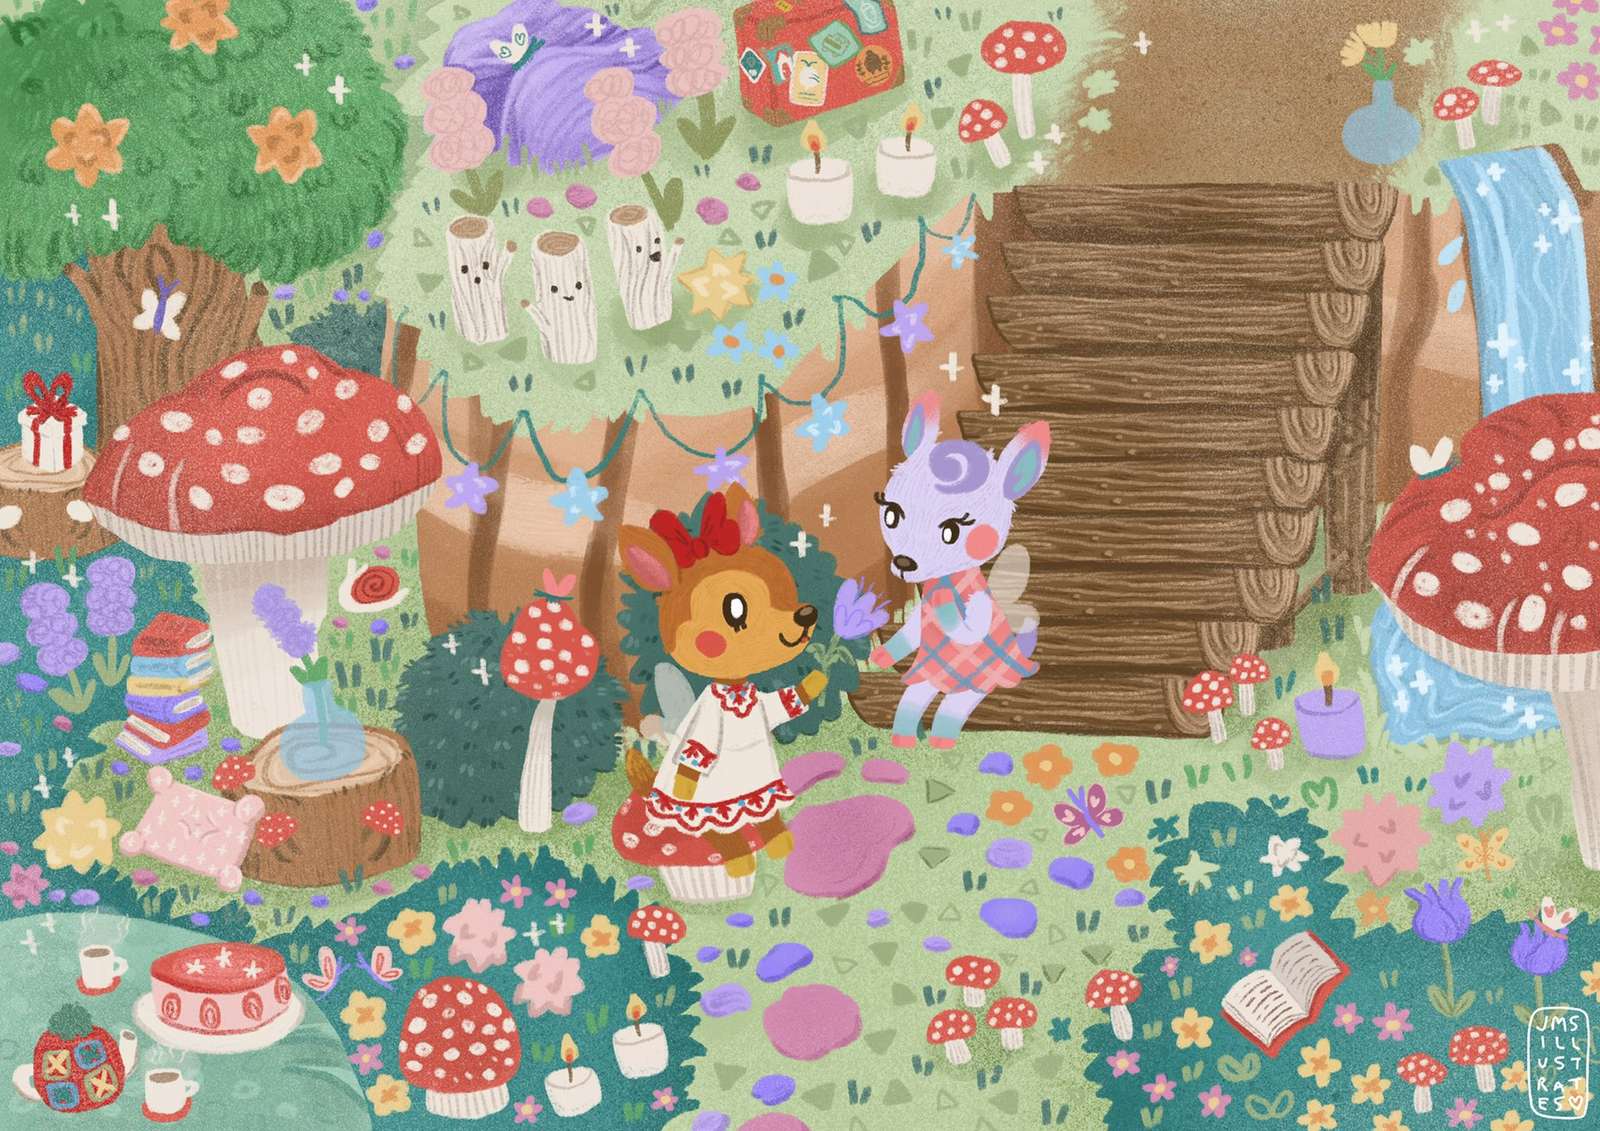 Faune et Diana Art (Animal Crossing New Horizon) puzzle en ligne à partir d'une photo